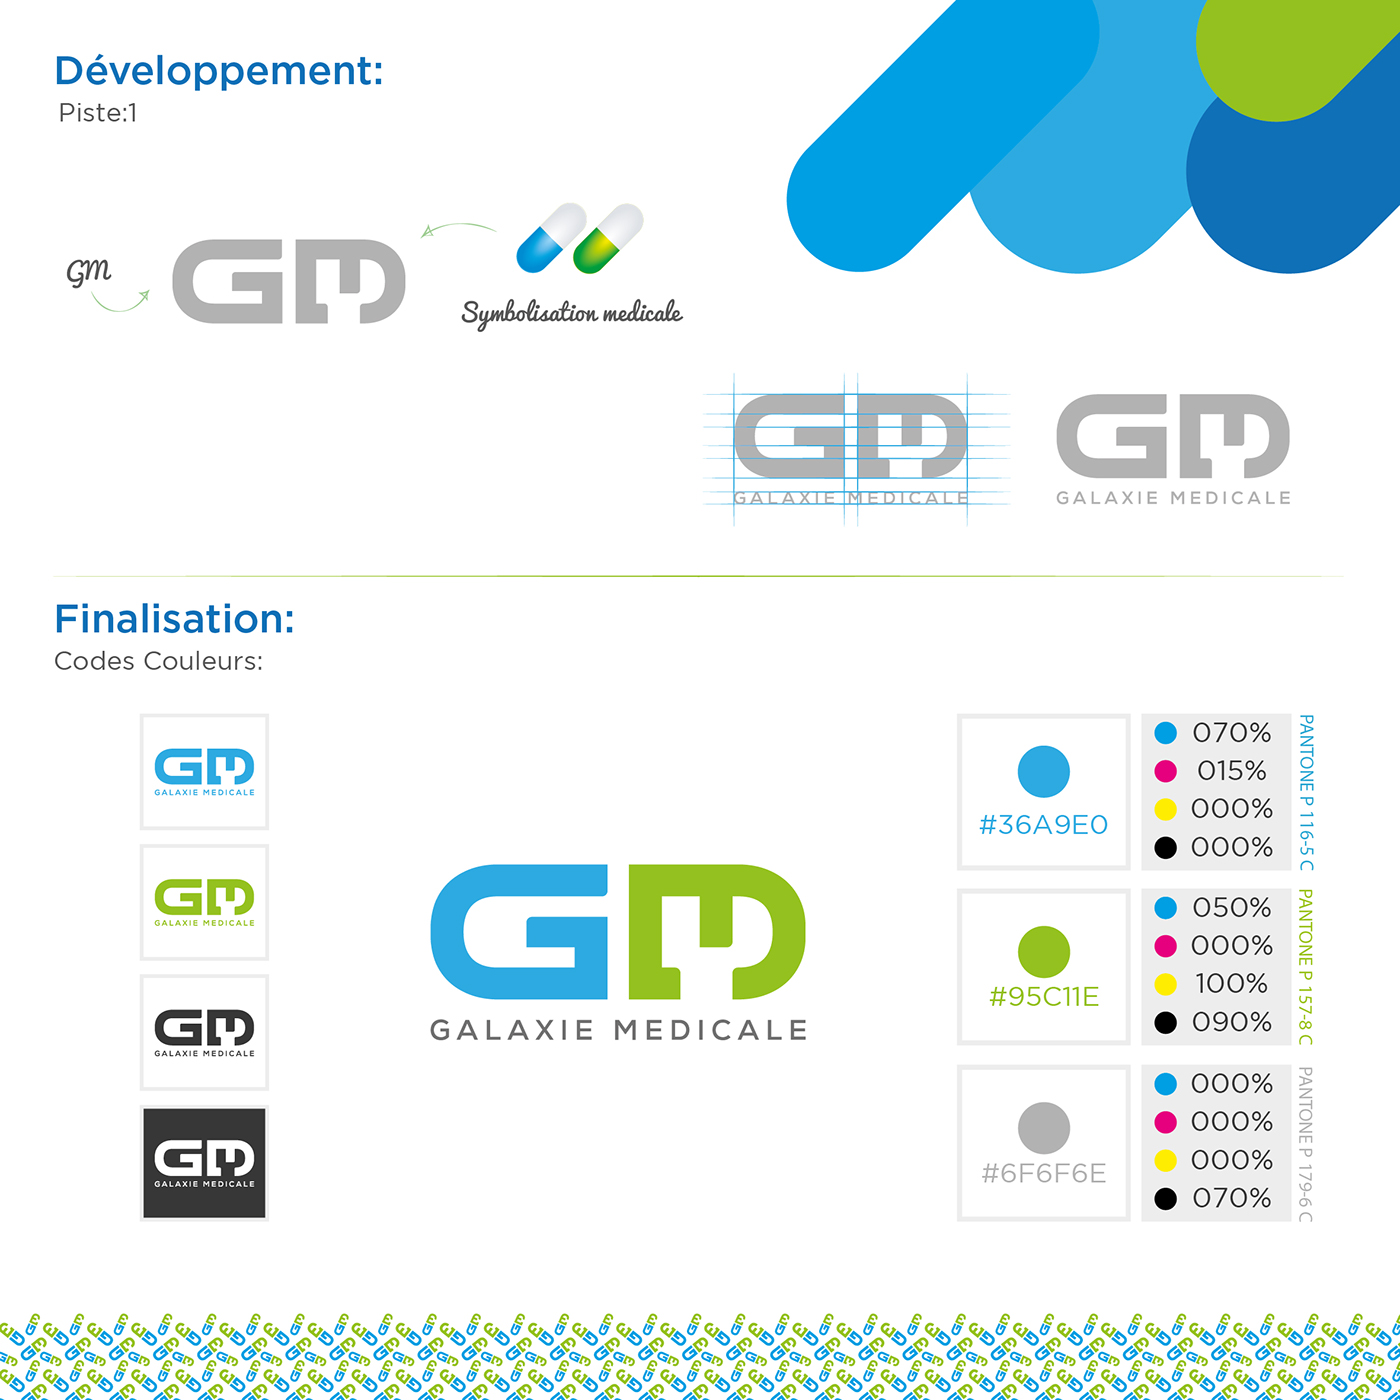 GM GM galaxie medicale galaxie medicale logo charte graphique charte graphique galaxie medicale logo